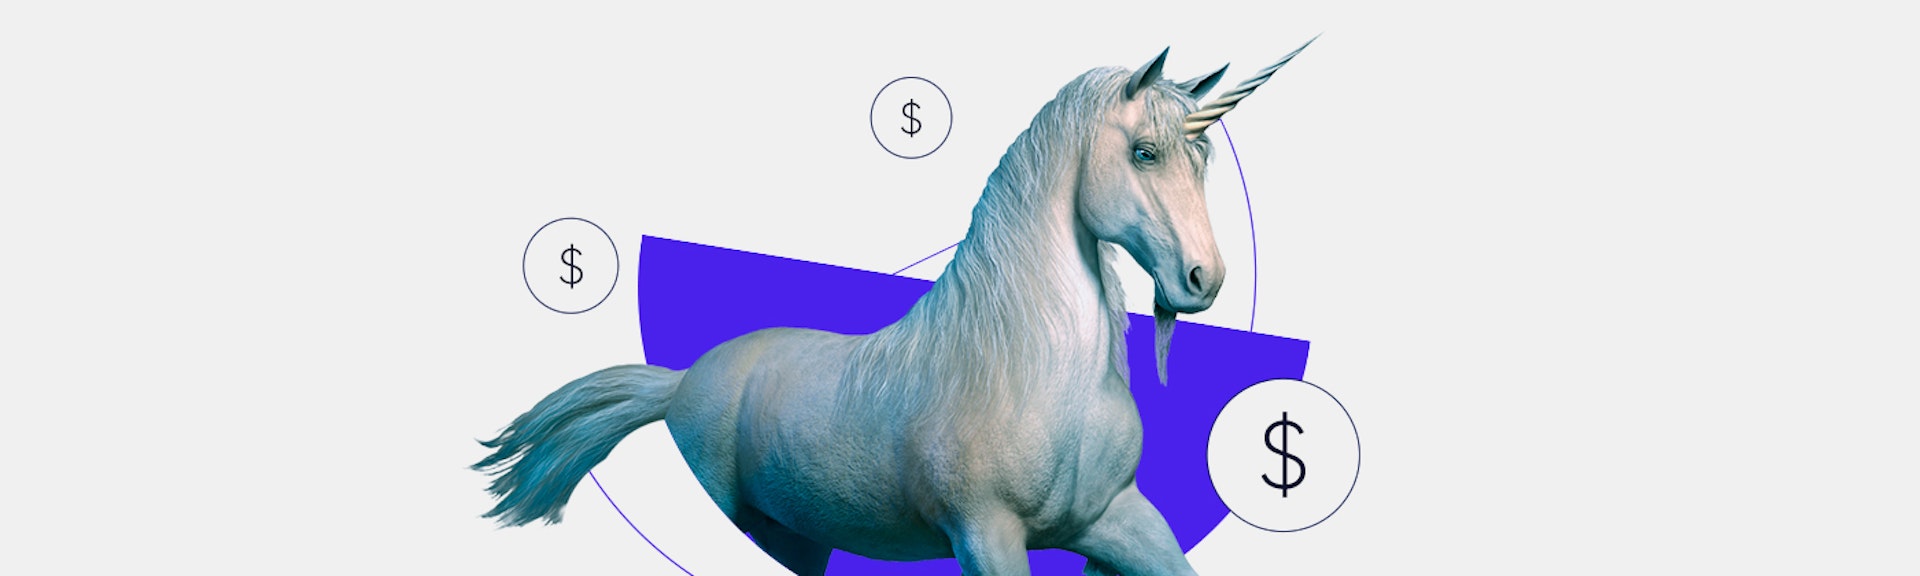 Empresas unicornios: las startups que revolucionaron el mercado con sus innovaciones tecnológicas y su crecimiento exponencial